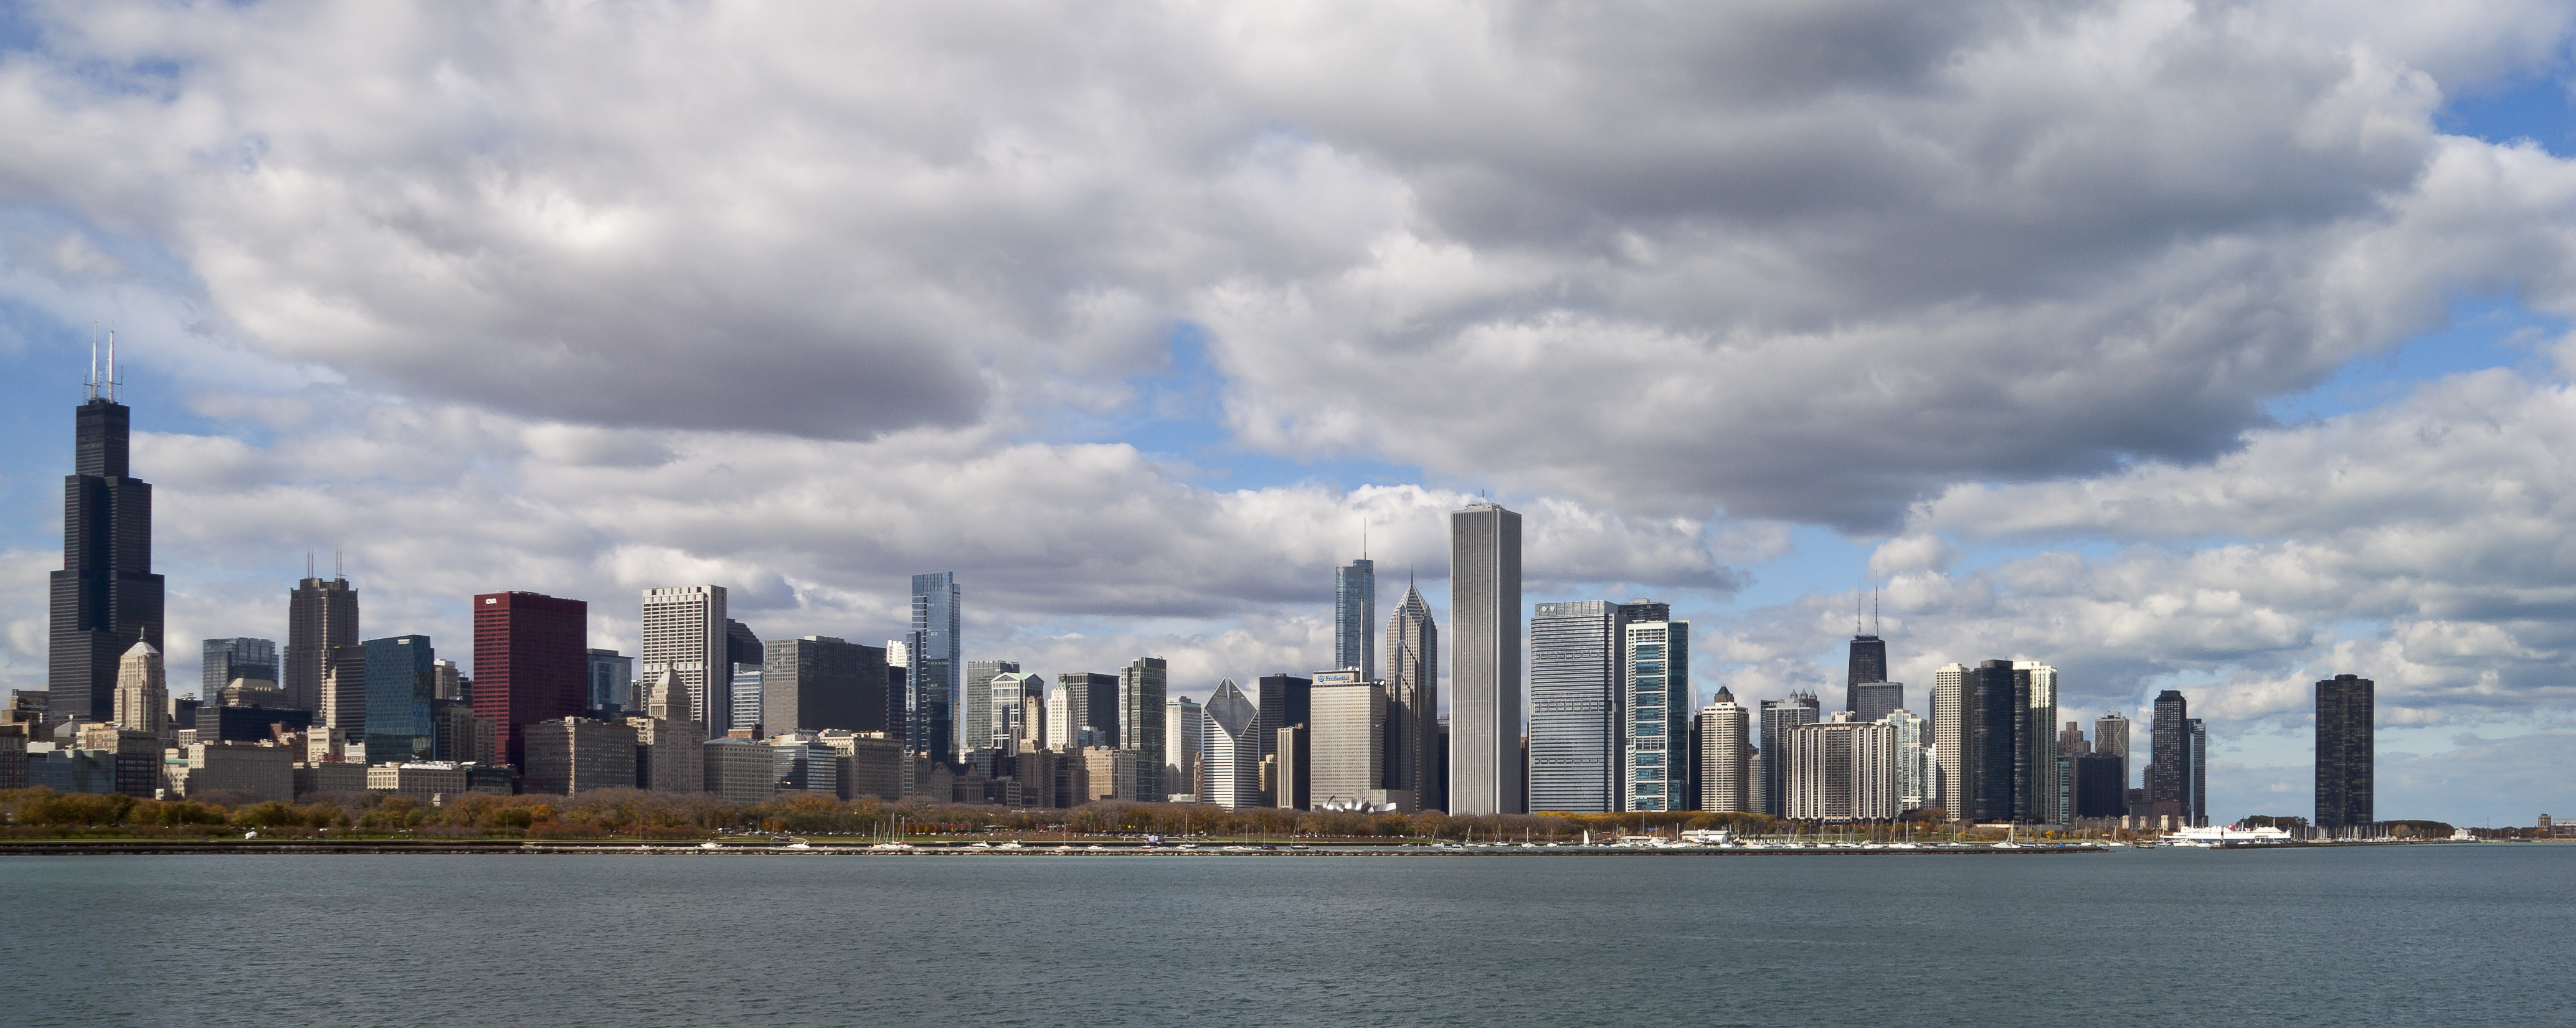 Vista del Skyline de Chicago desde el Planetario, Illinois, Estados Unidos, 2012-10-20, DD 02